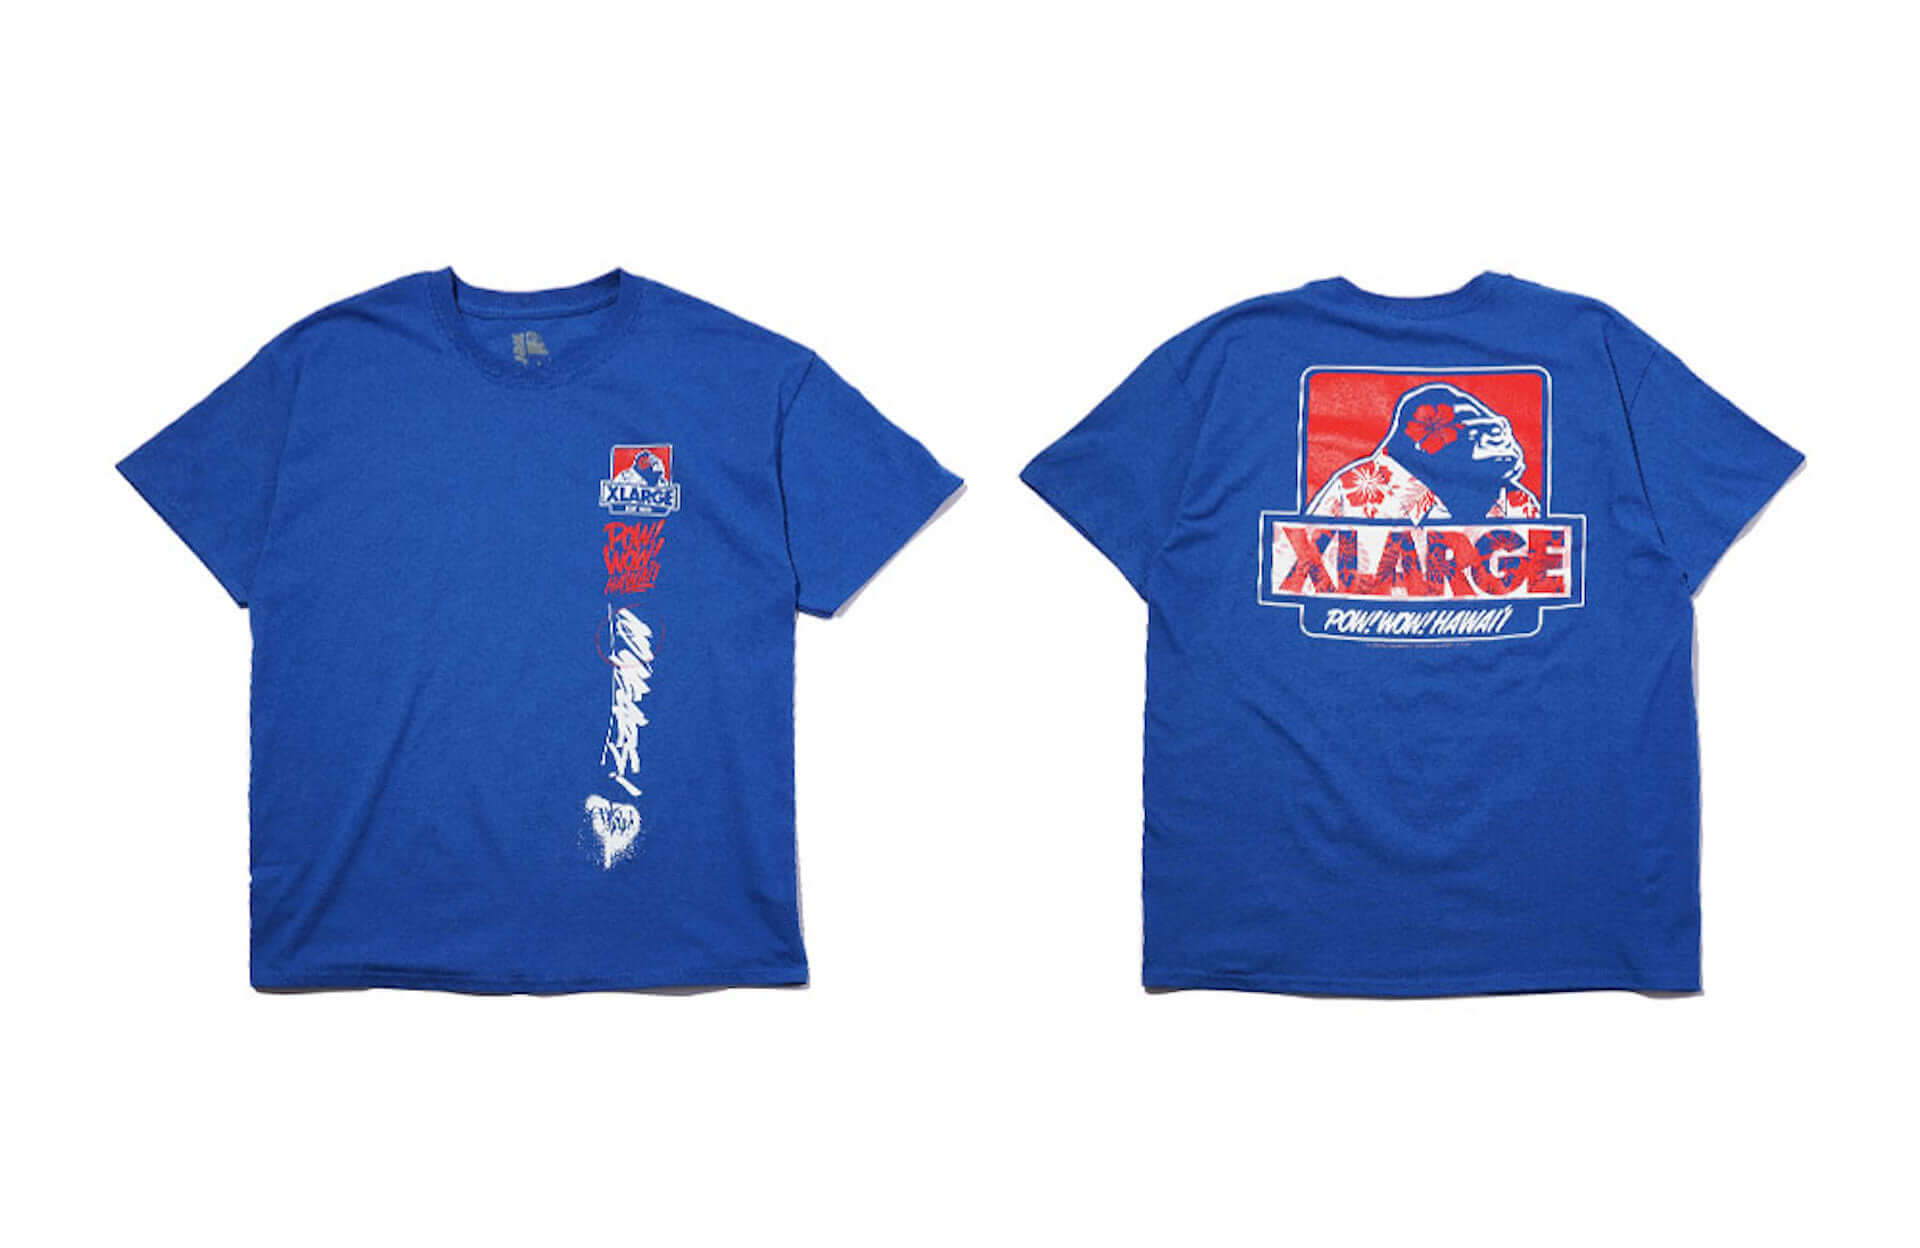 XLARGEと「POW！ WOW！ HAWAII」によるコラボが始動！OG SLICKのグラフィティーが施されたTシャツが発売決定 life200304_xlarge_3-1920x1248